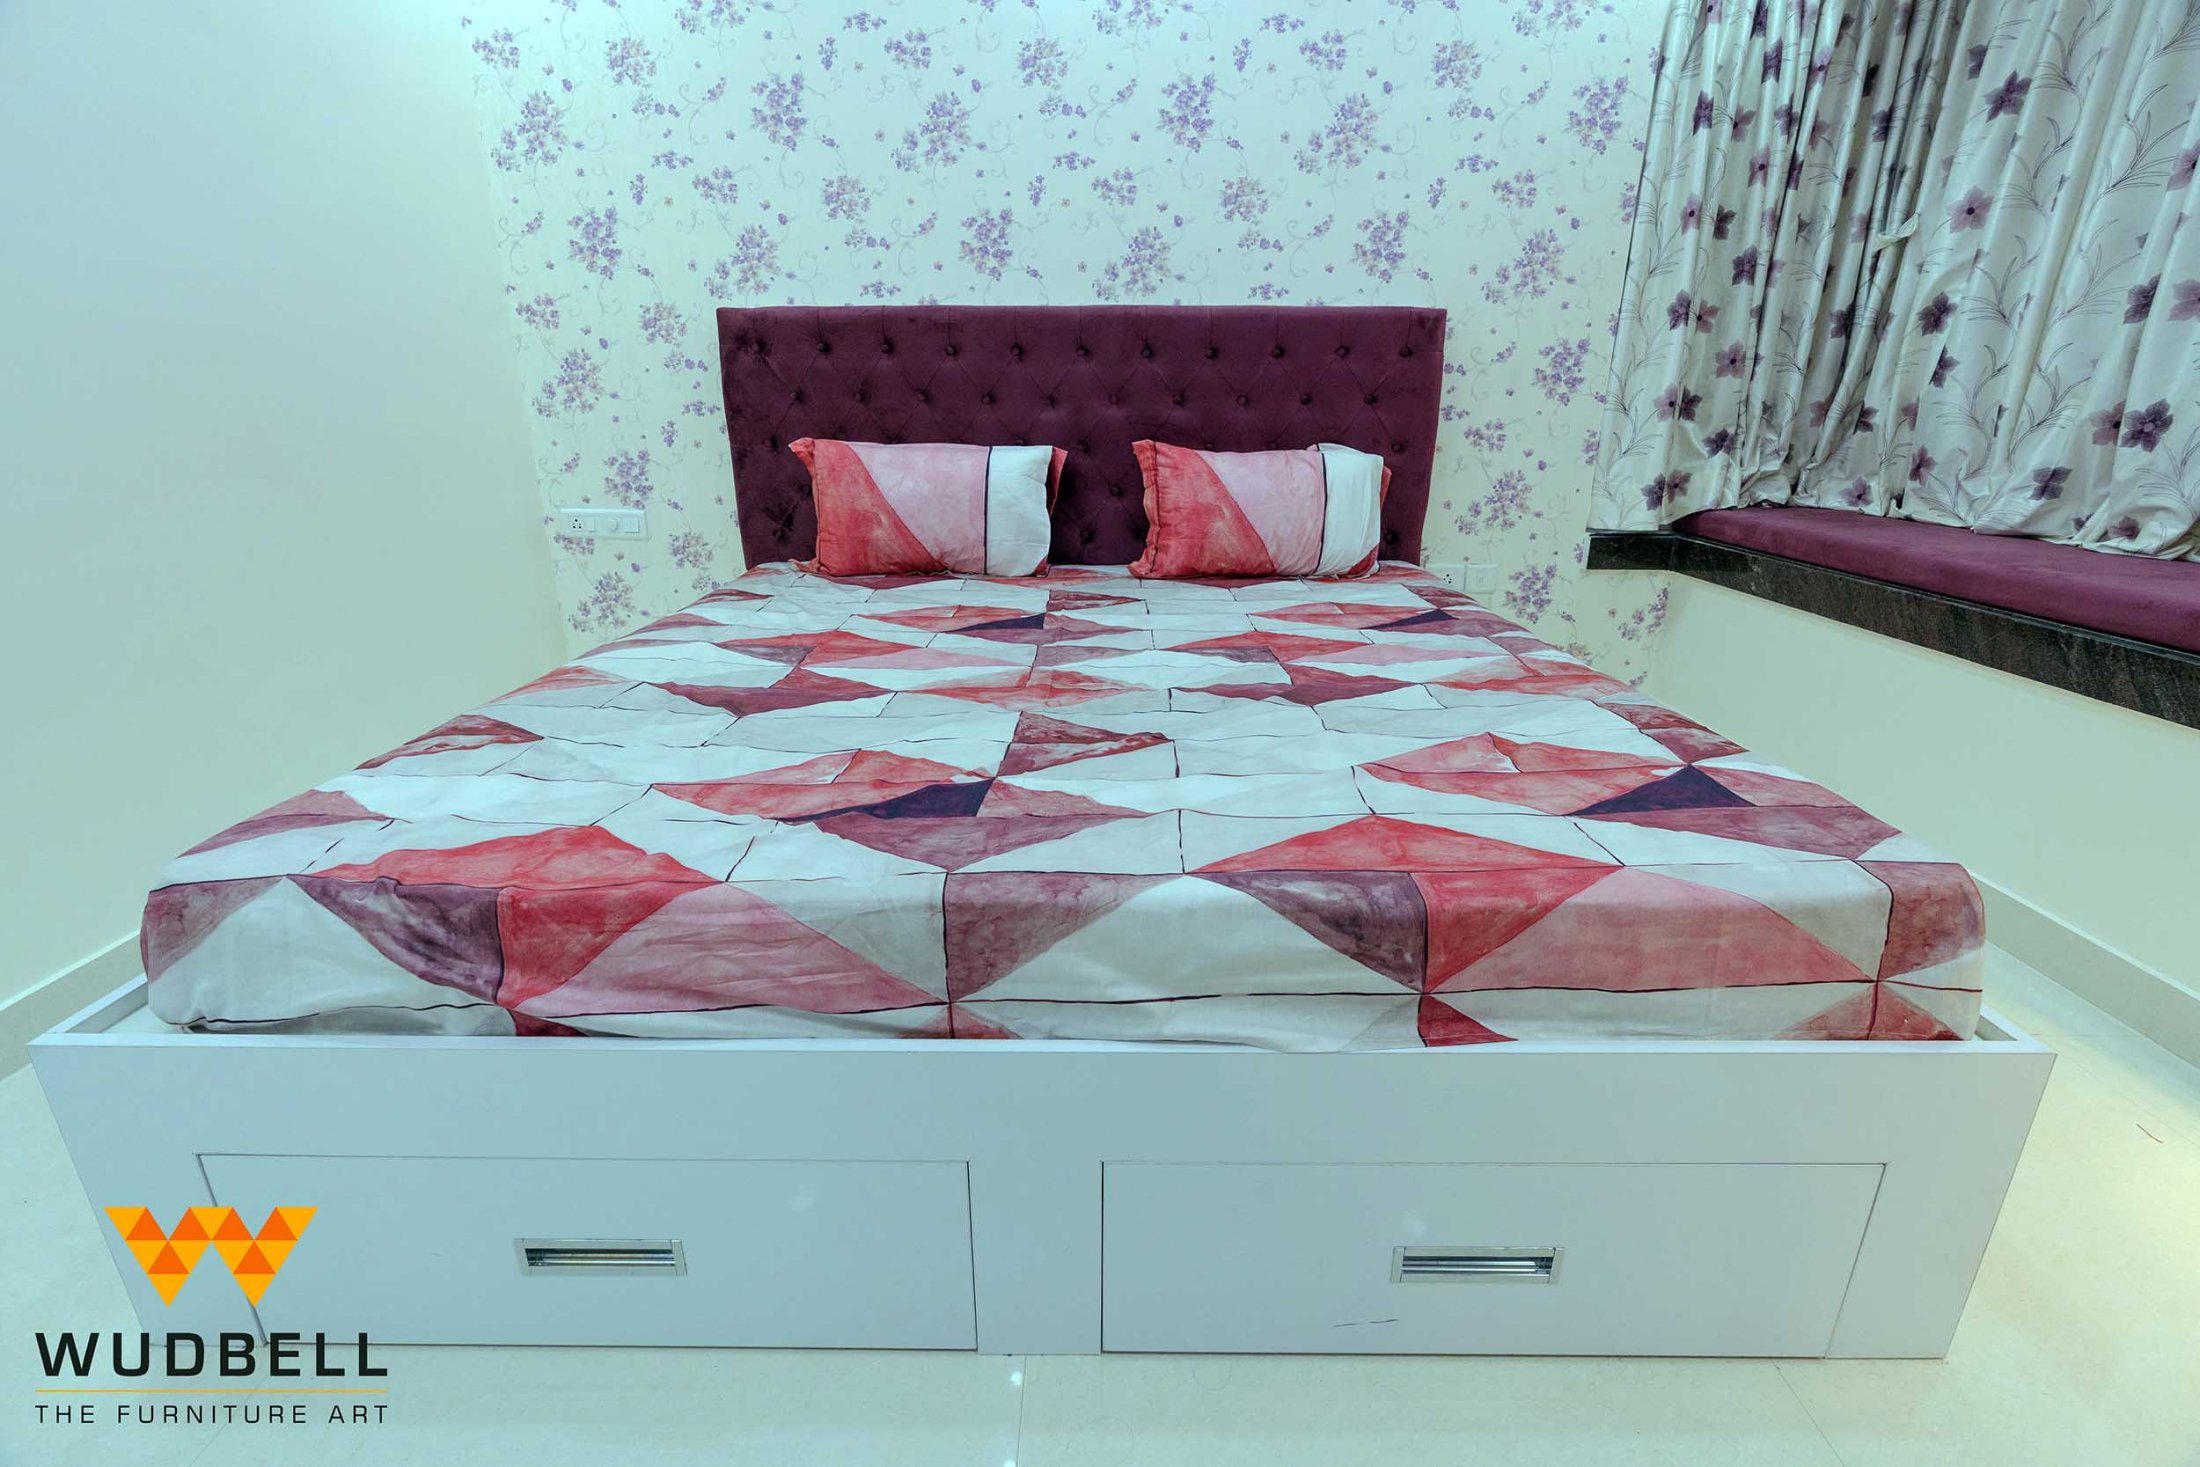 Exquisite storage-friendly bed